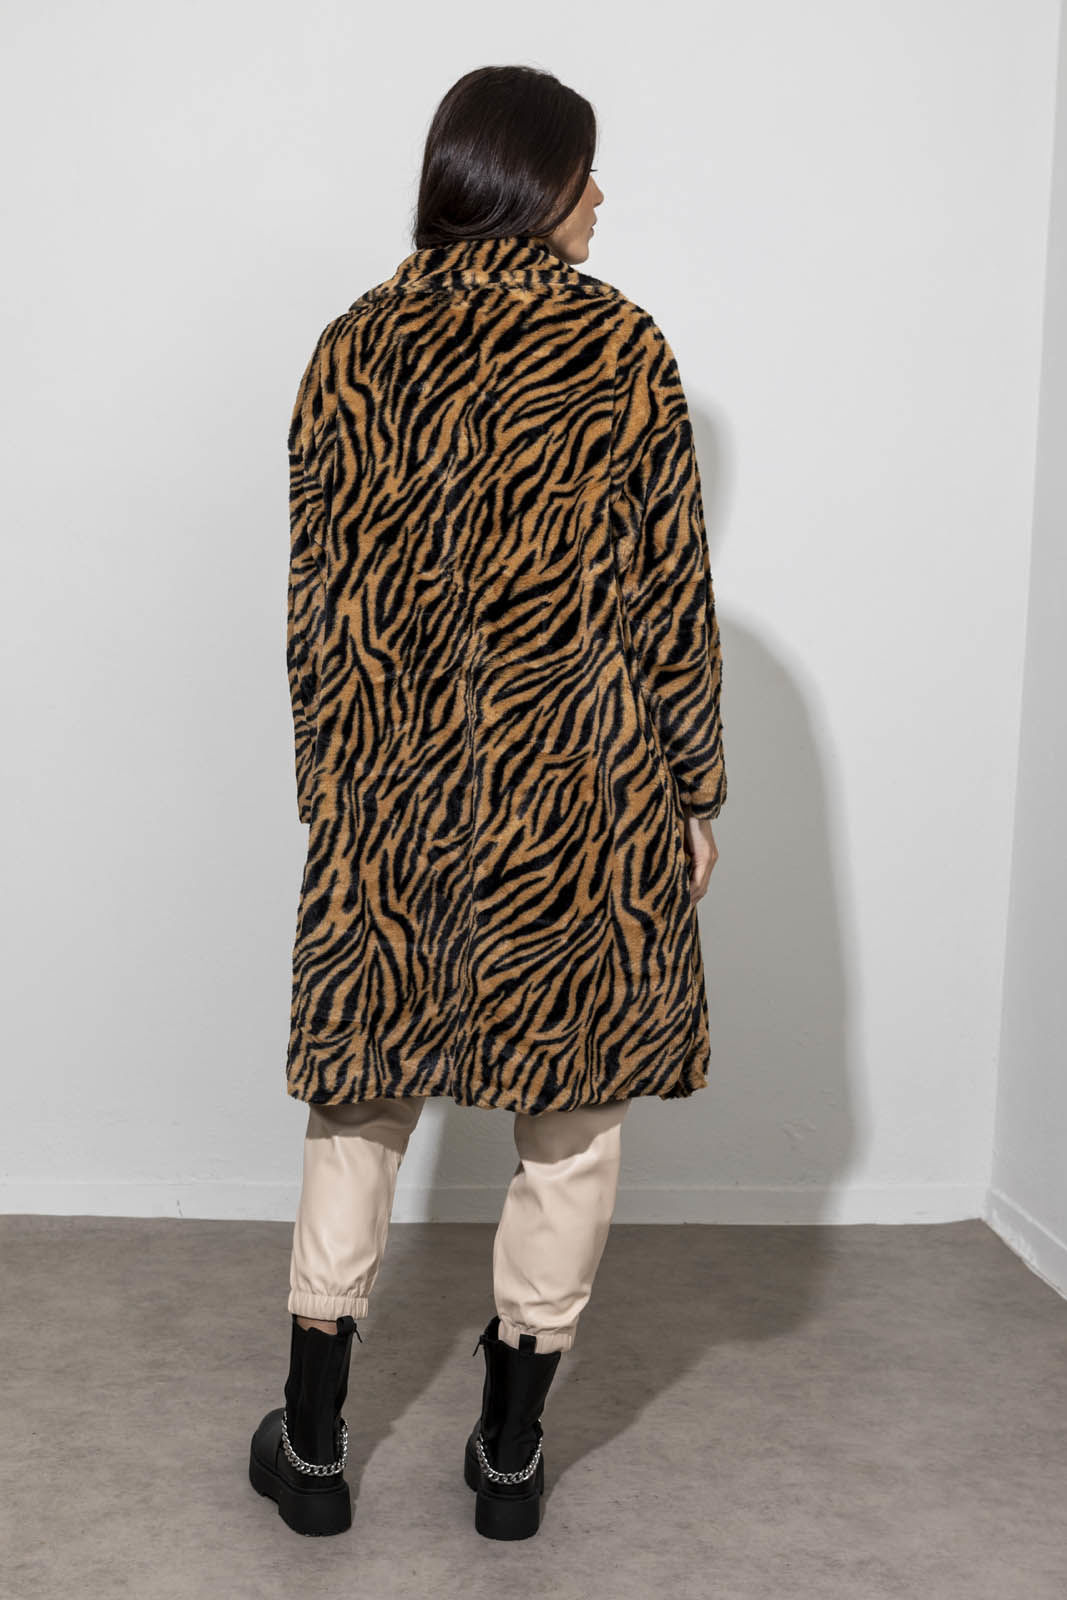 Εικόνα της Οversized zebra γούνινο παλτό